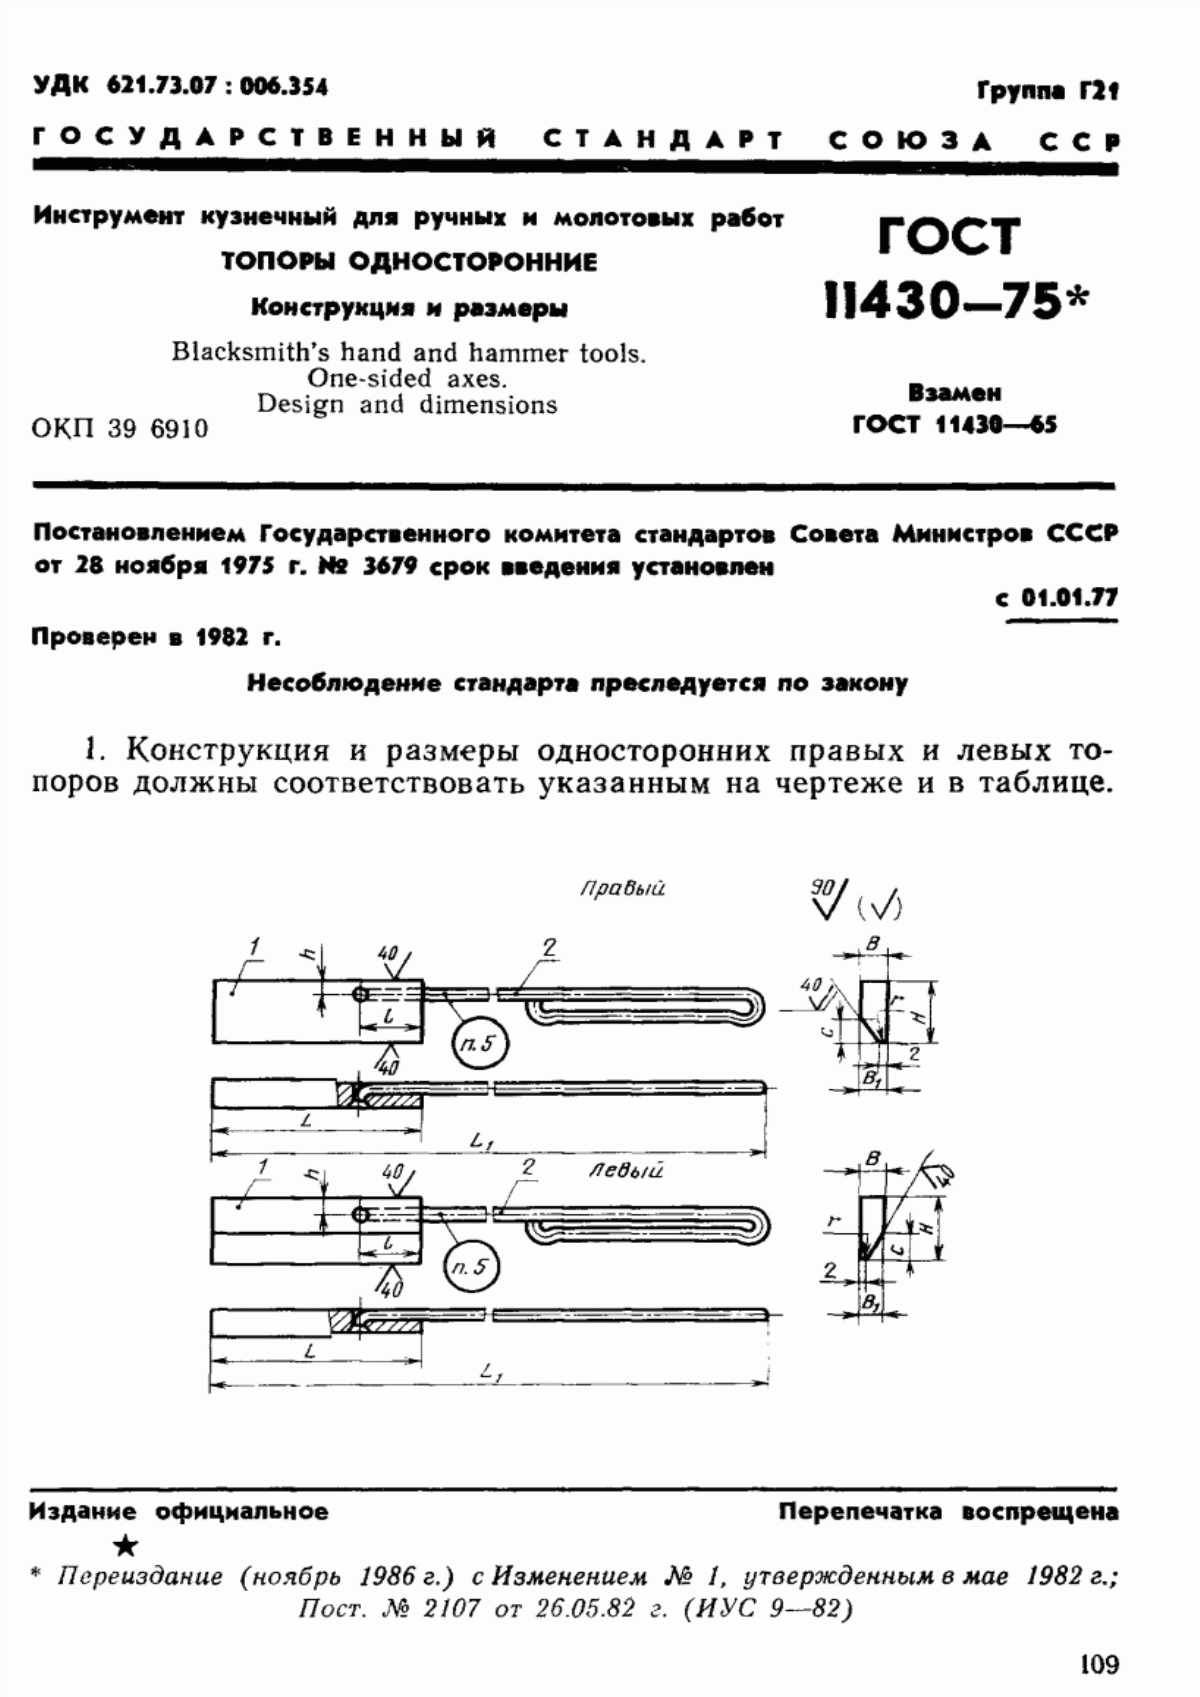 ГОСТ 11430-75 Инструмент кузнечный для ручных и молотовых работ. Топоры односторонние. Конструкция и размеры